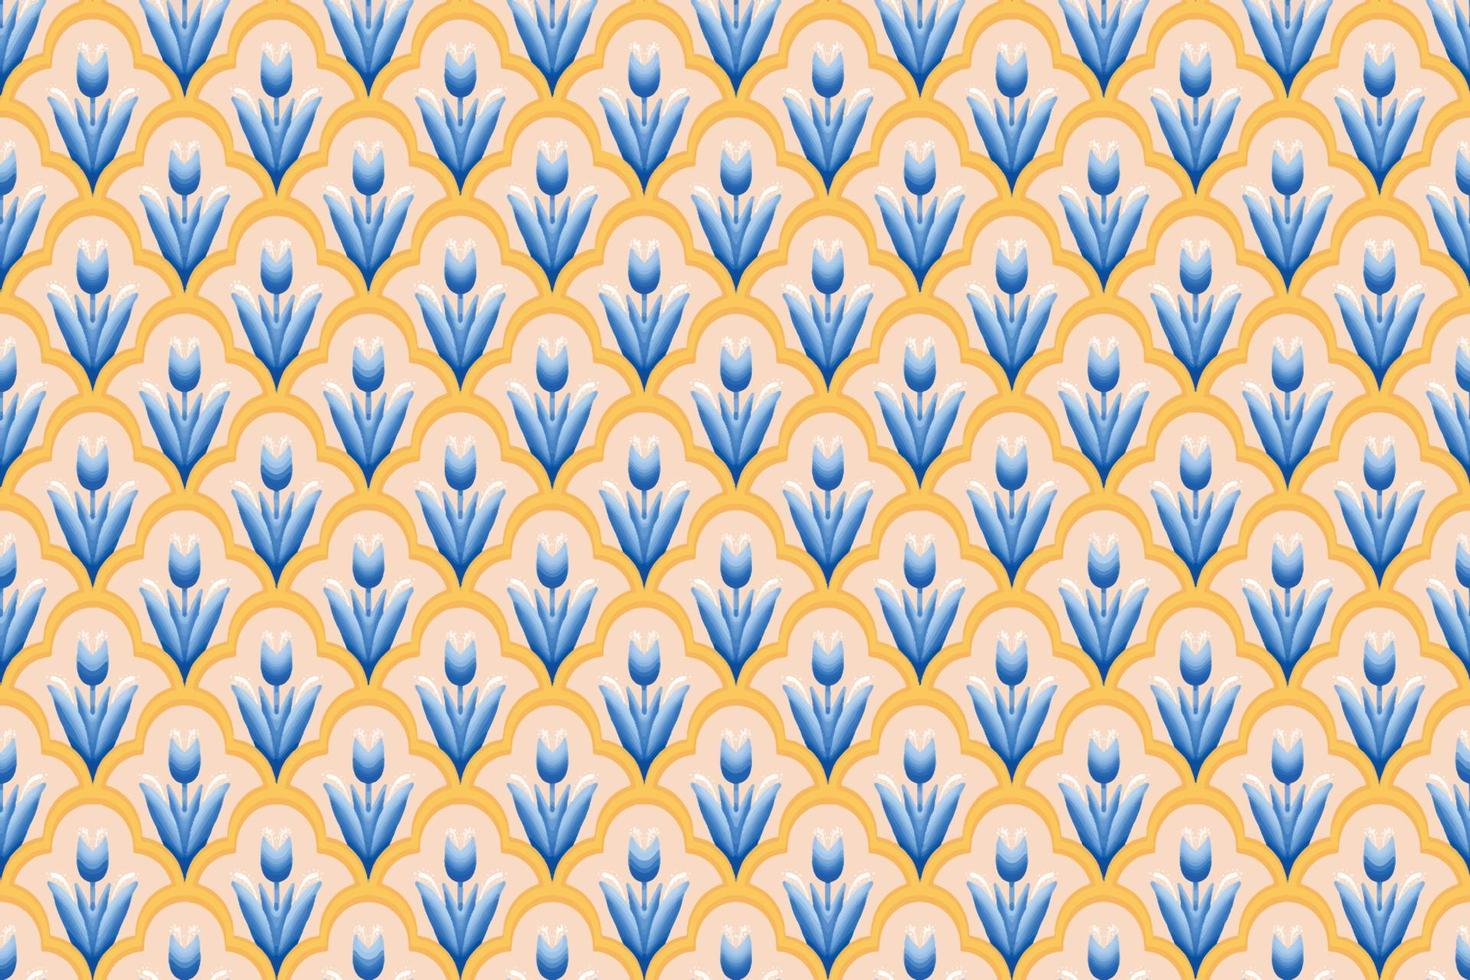 blaue blume auf elfenbein, weiß, gelbes geometrisches ethnisches orientalisches muster traditionelles design für hintergrund, teppich, tapete, kleidung, verpackung, batik, stoff, vektorillustrationsstickereiart vektor